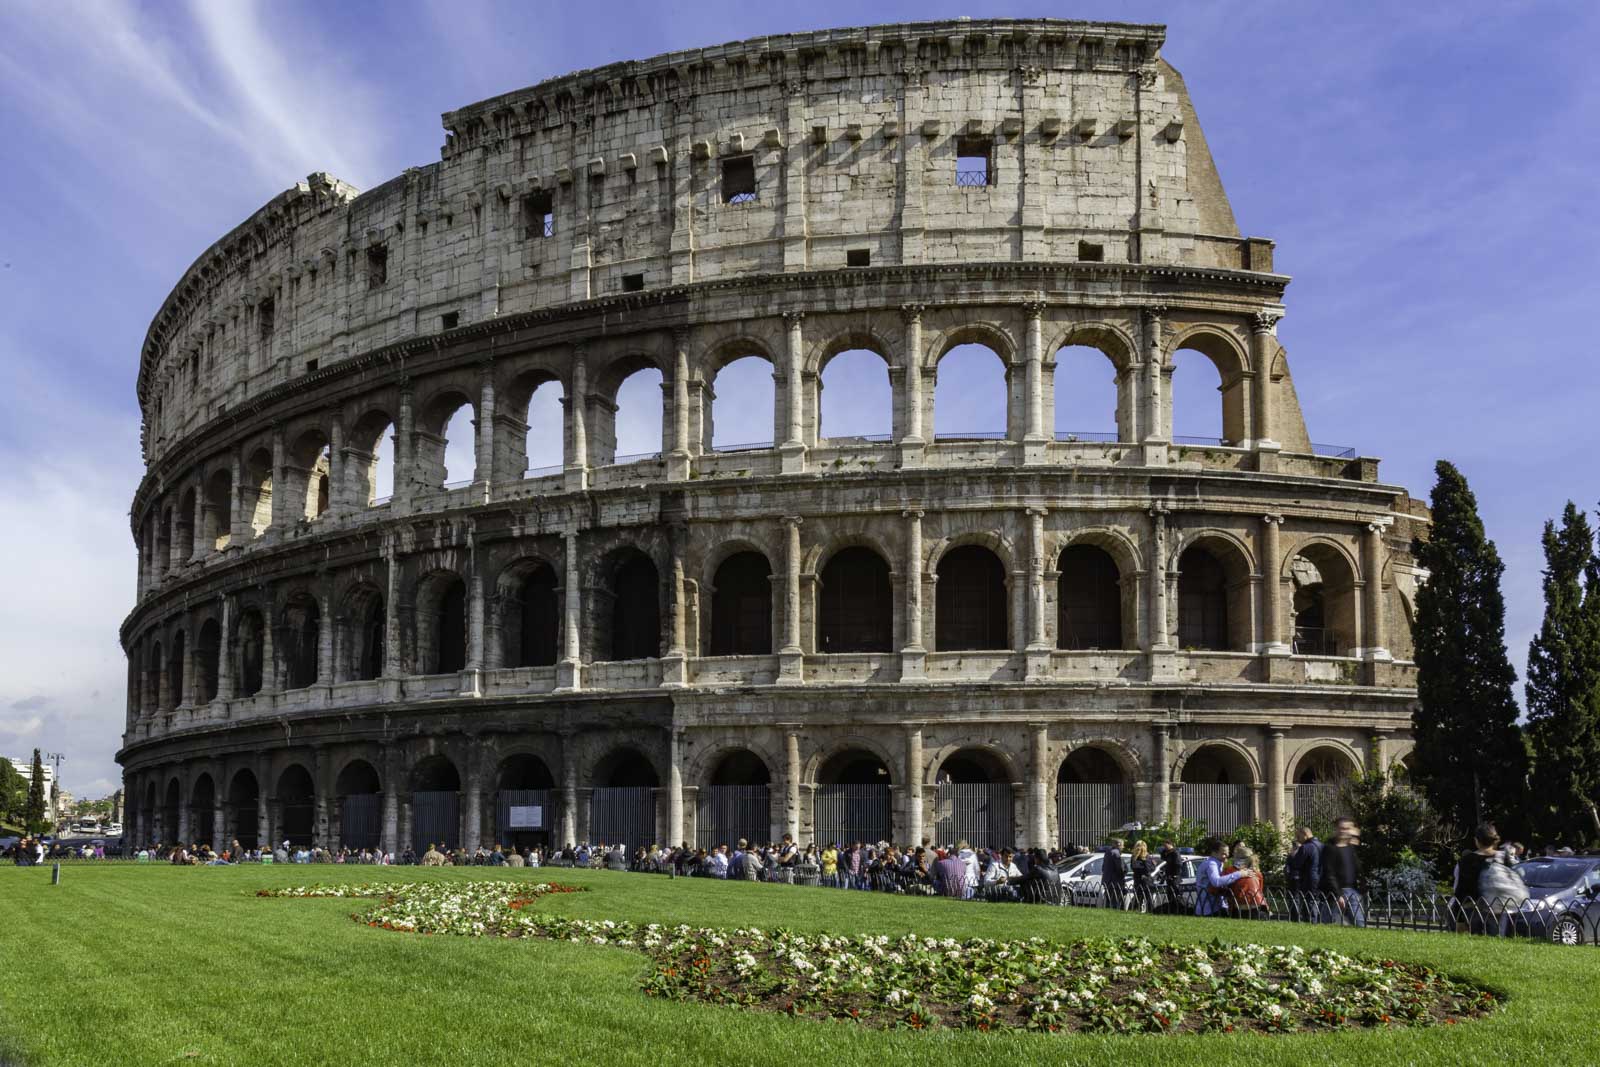 The Colosseum in Monti area of Rome